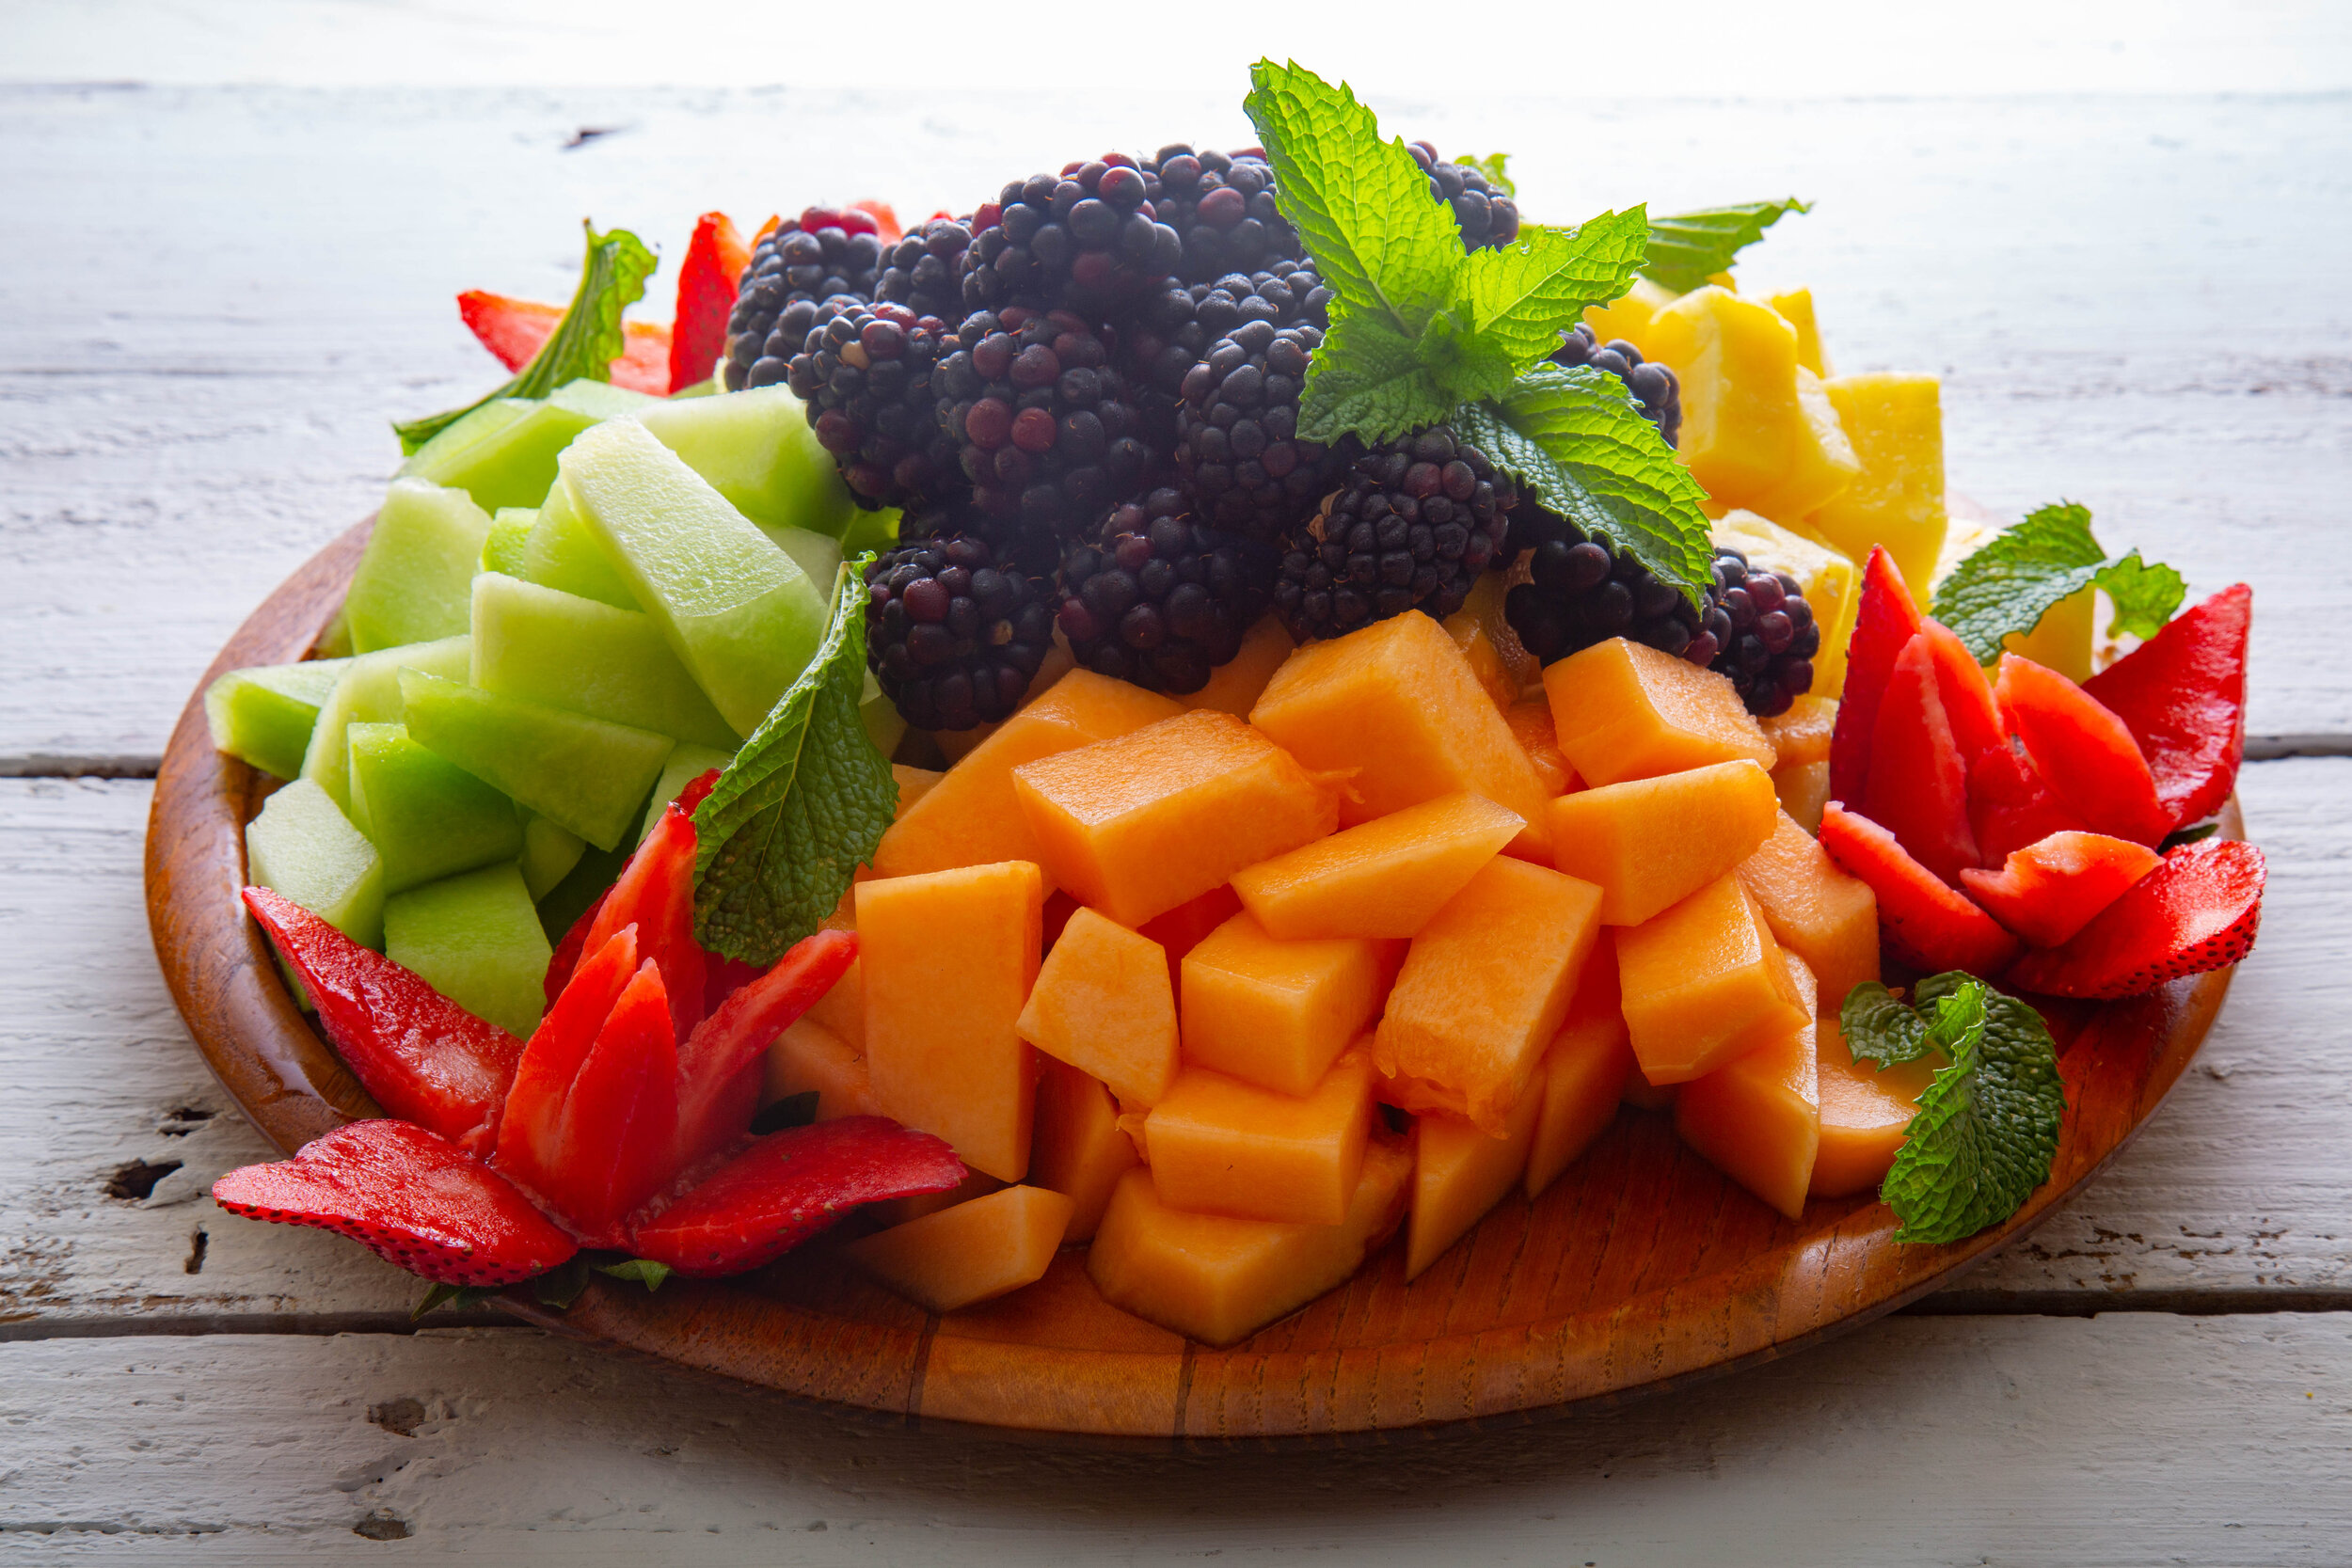 Fruit Platter.jpg